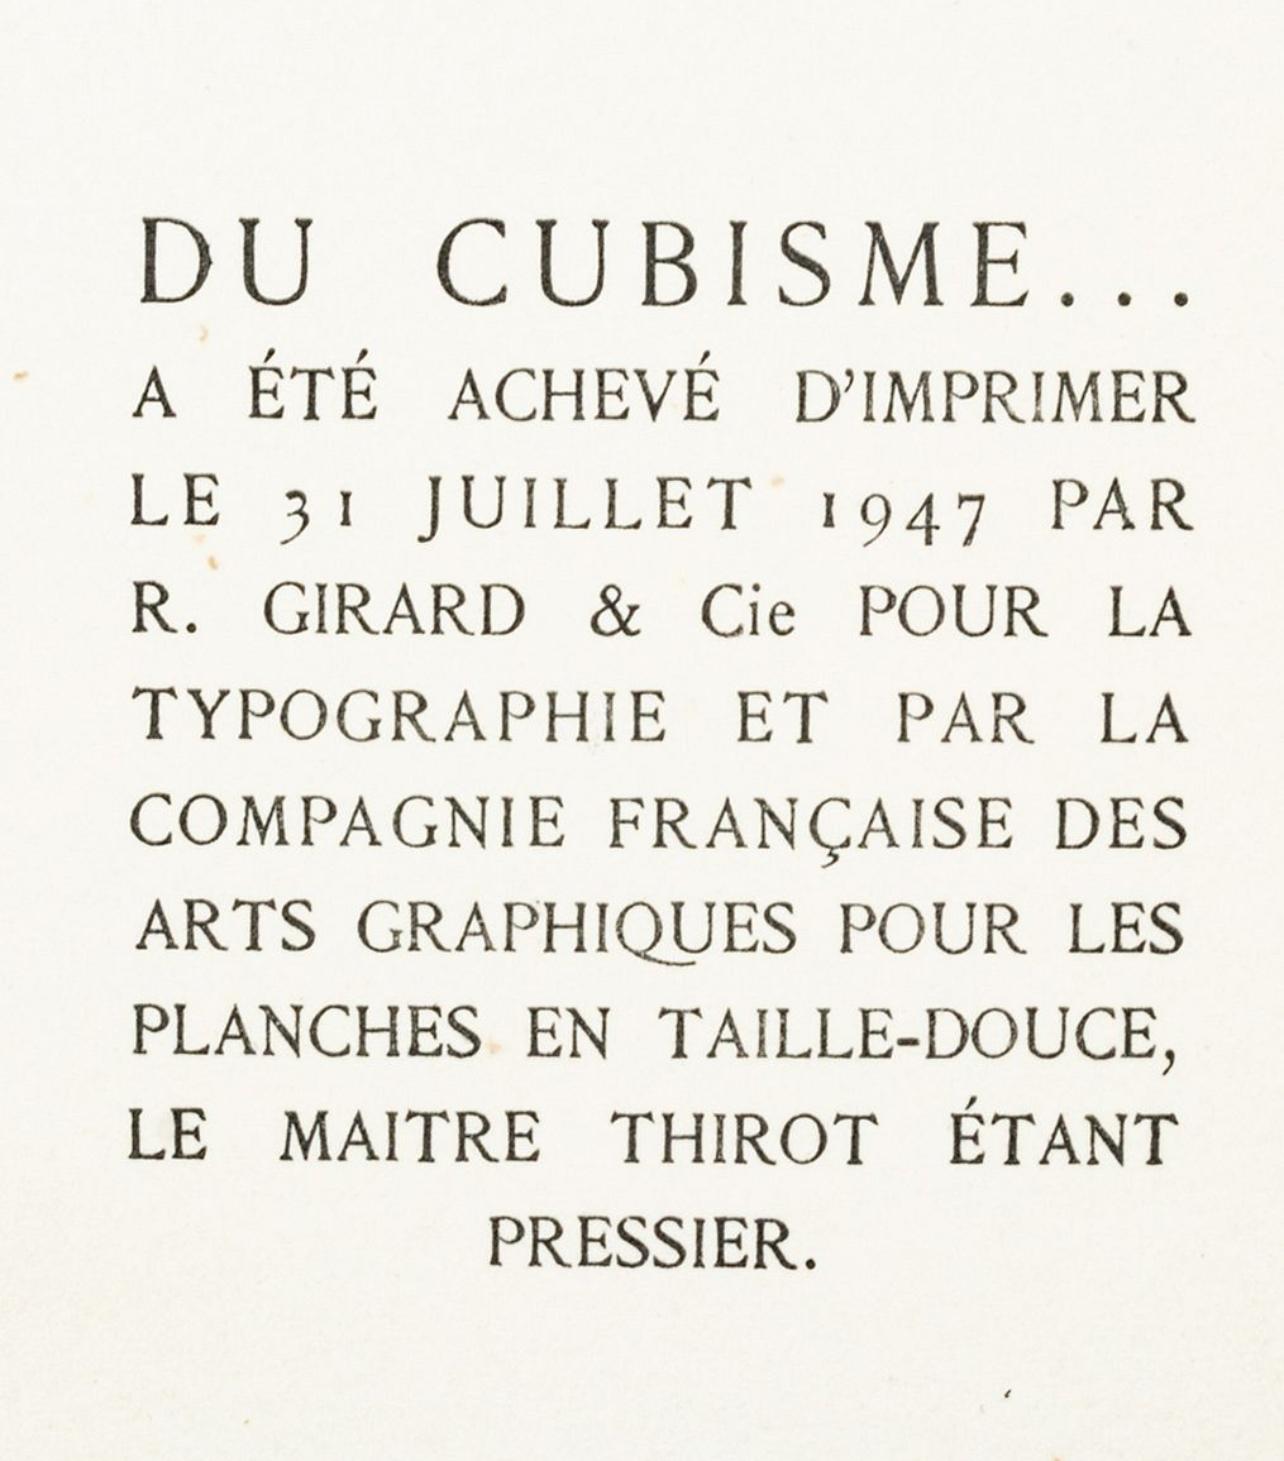 Gleizes, Composition, Du cubisme (after) For Sale 1